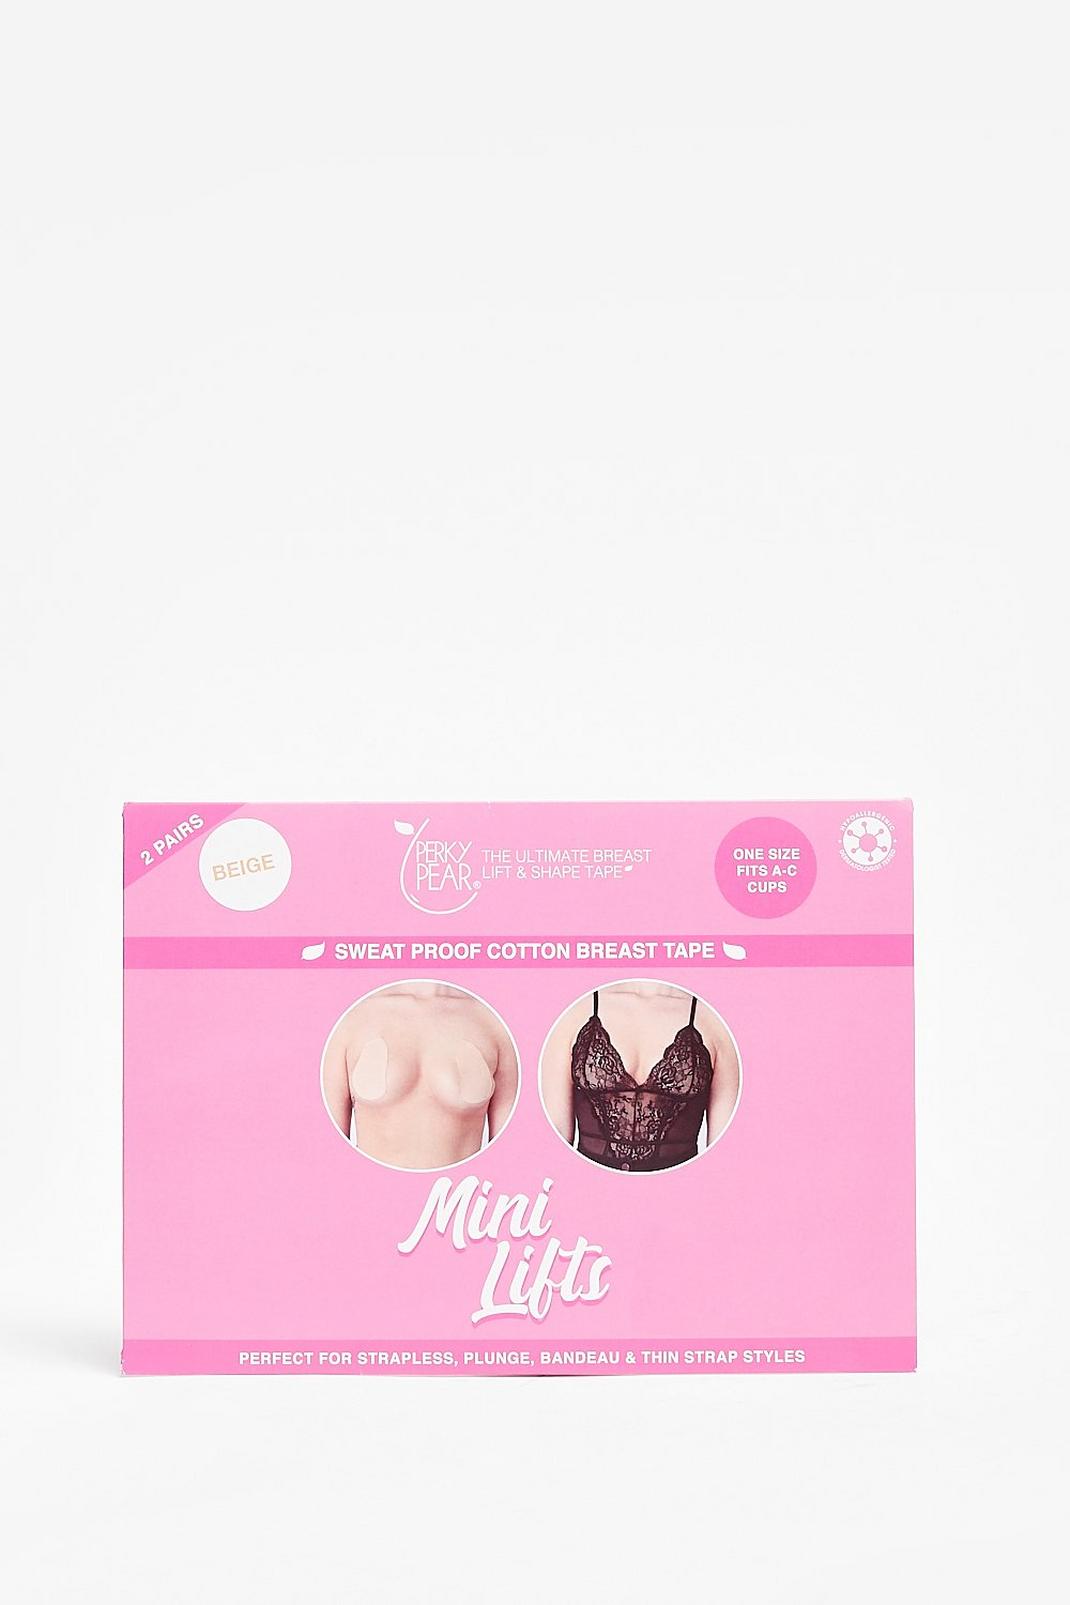 Perky Pear Mini Lifts Breast Tape